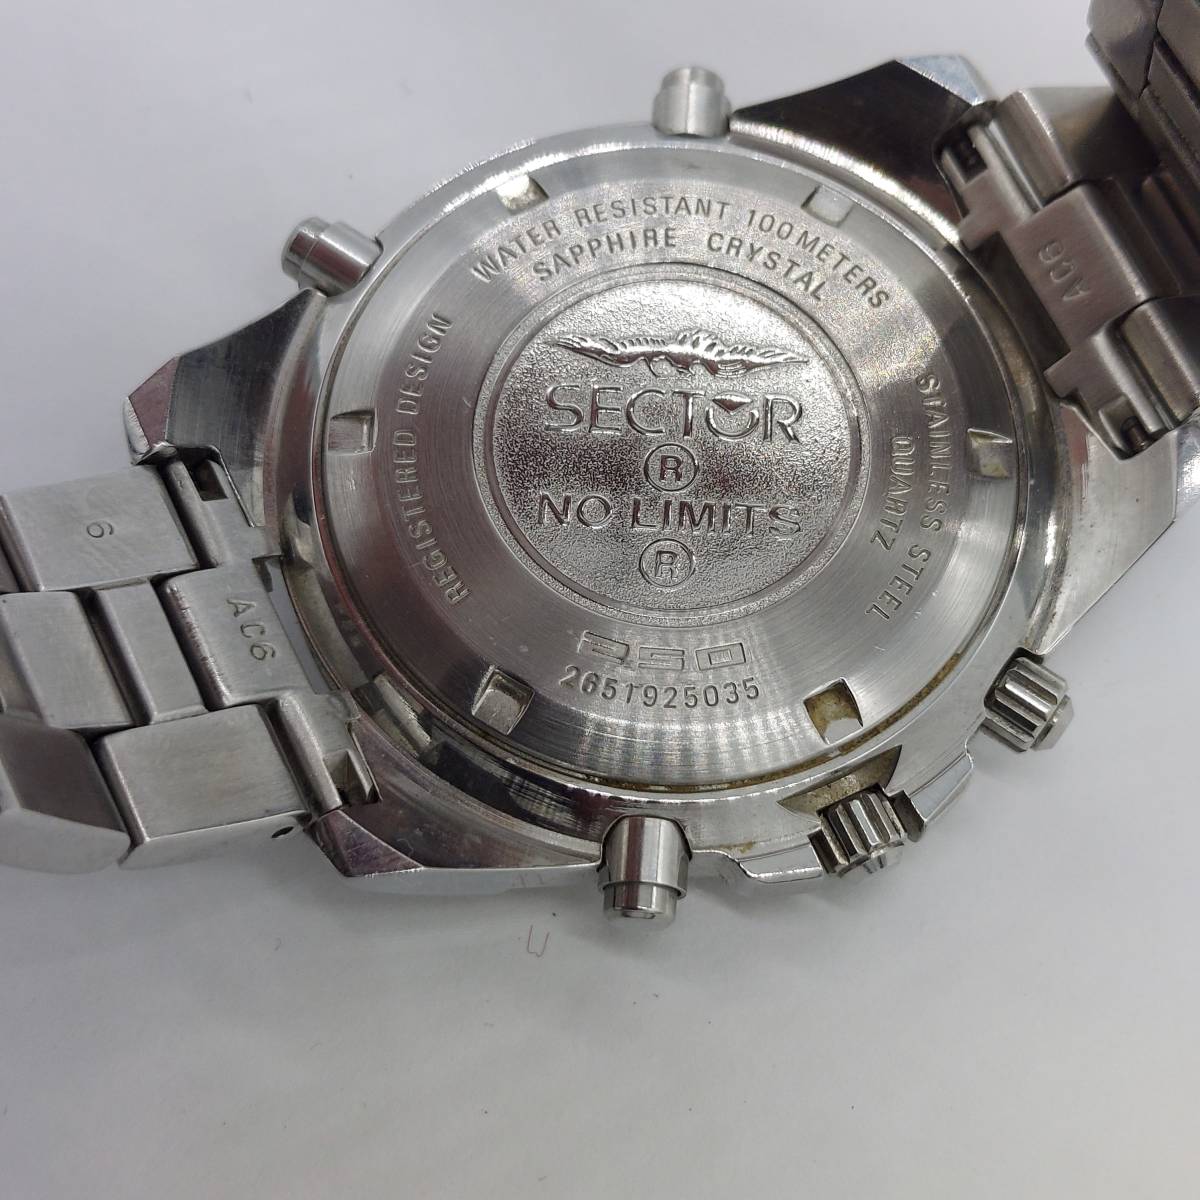 【美品】 セクター 250 2651925035 QZ クロノグラフ メンズ腕時計 (4787)_画像6